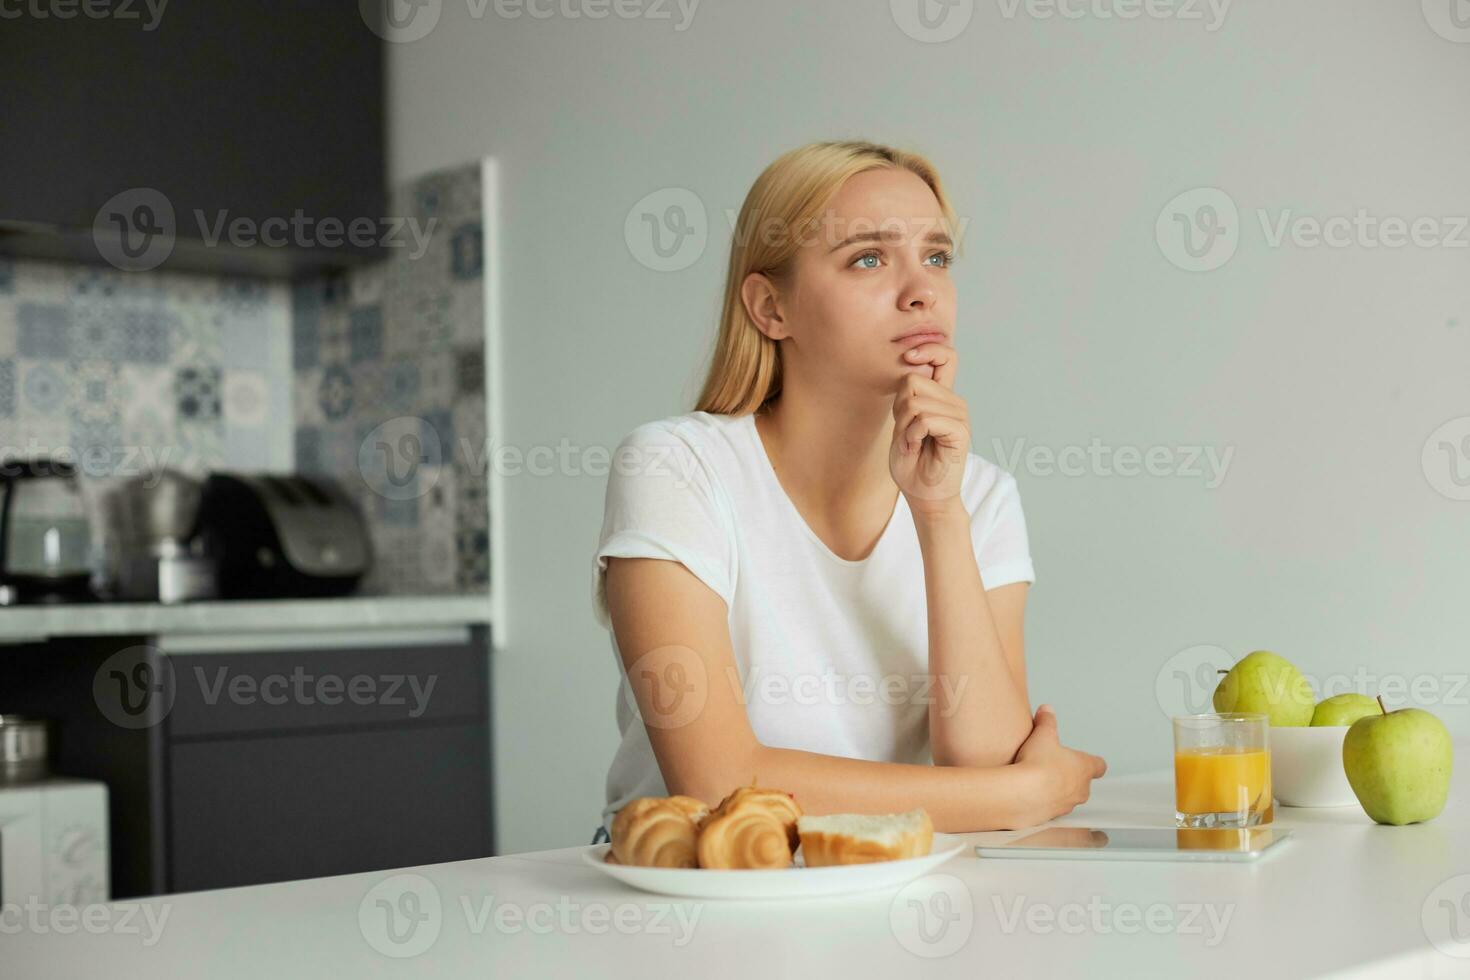 een jong blond meisje zit Bij de keuken tafel, verdrietig, looks bedachtzaam naar de venster kant, Aan de tafel -a glas van sap, tablet, appels, broodjes, gekleed in een huiselijk wit t-shirt, keuken achtergrond foto